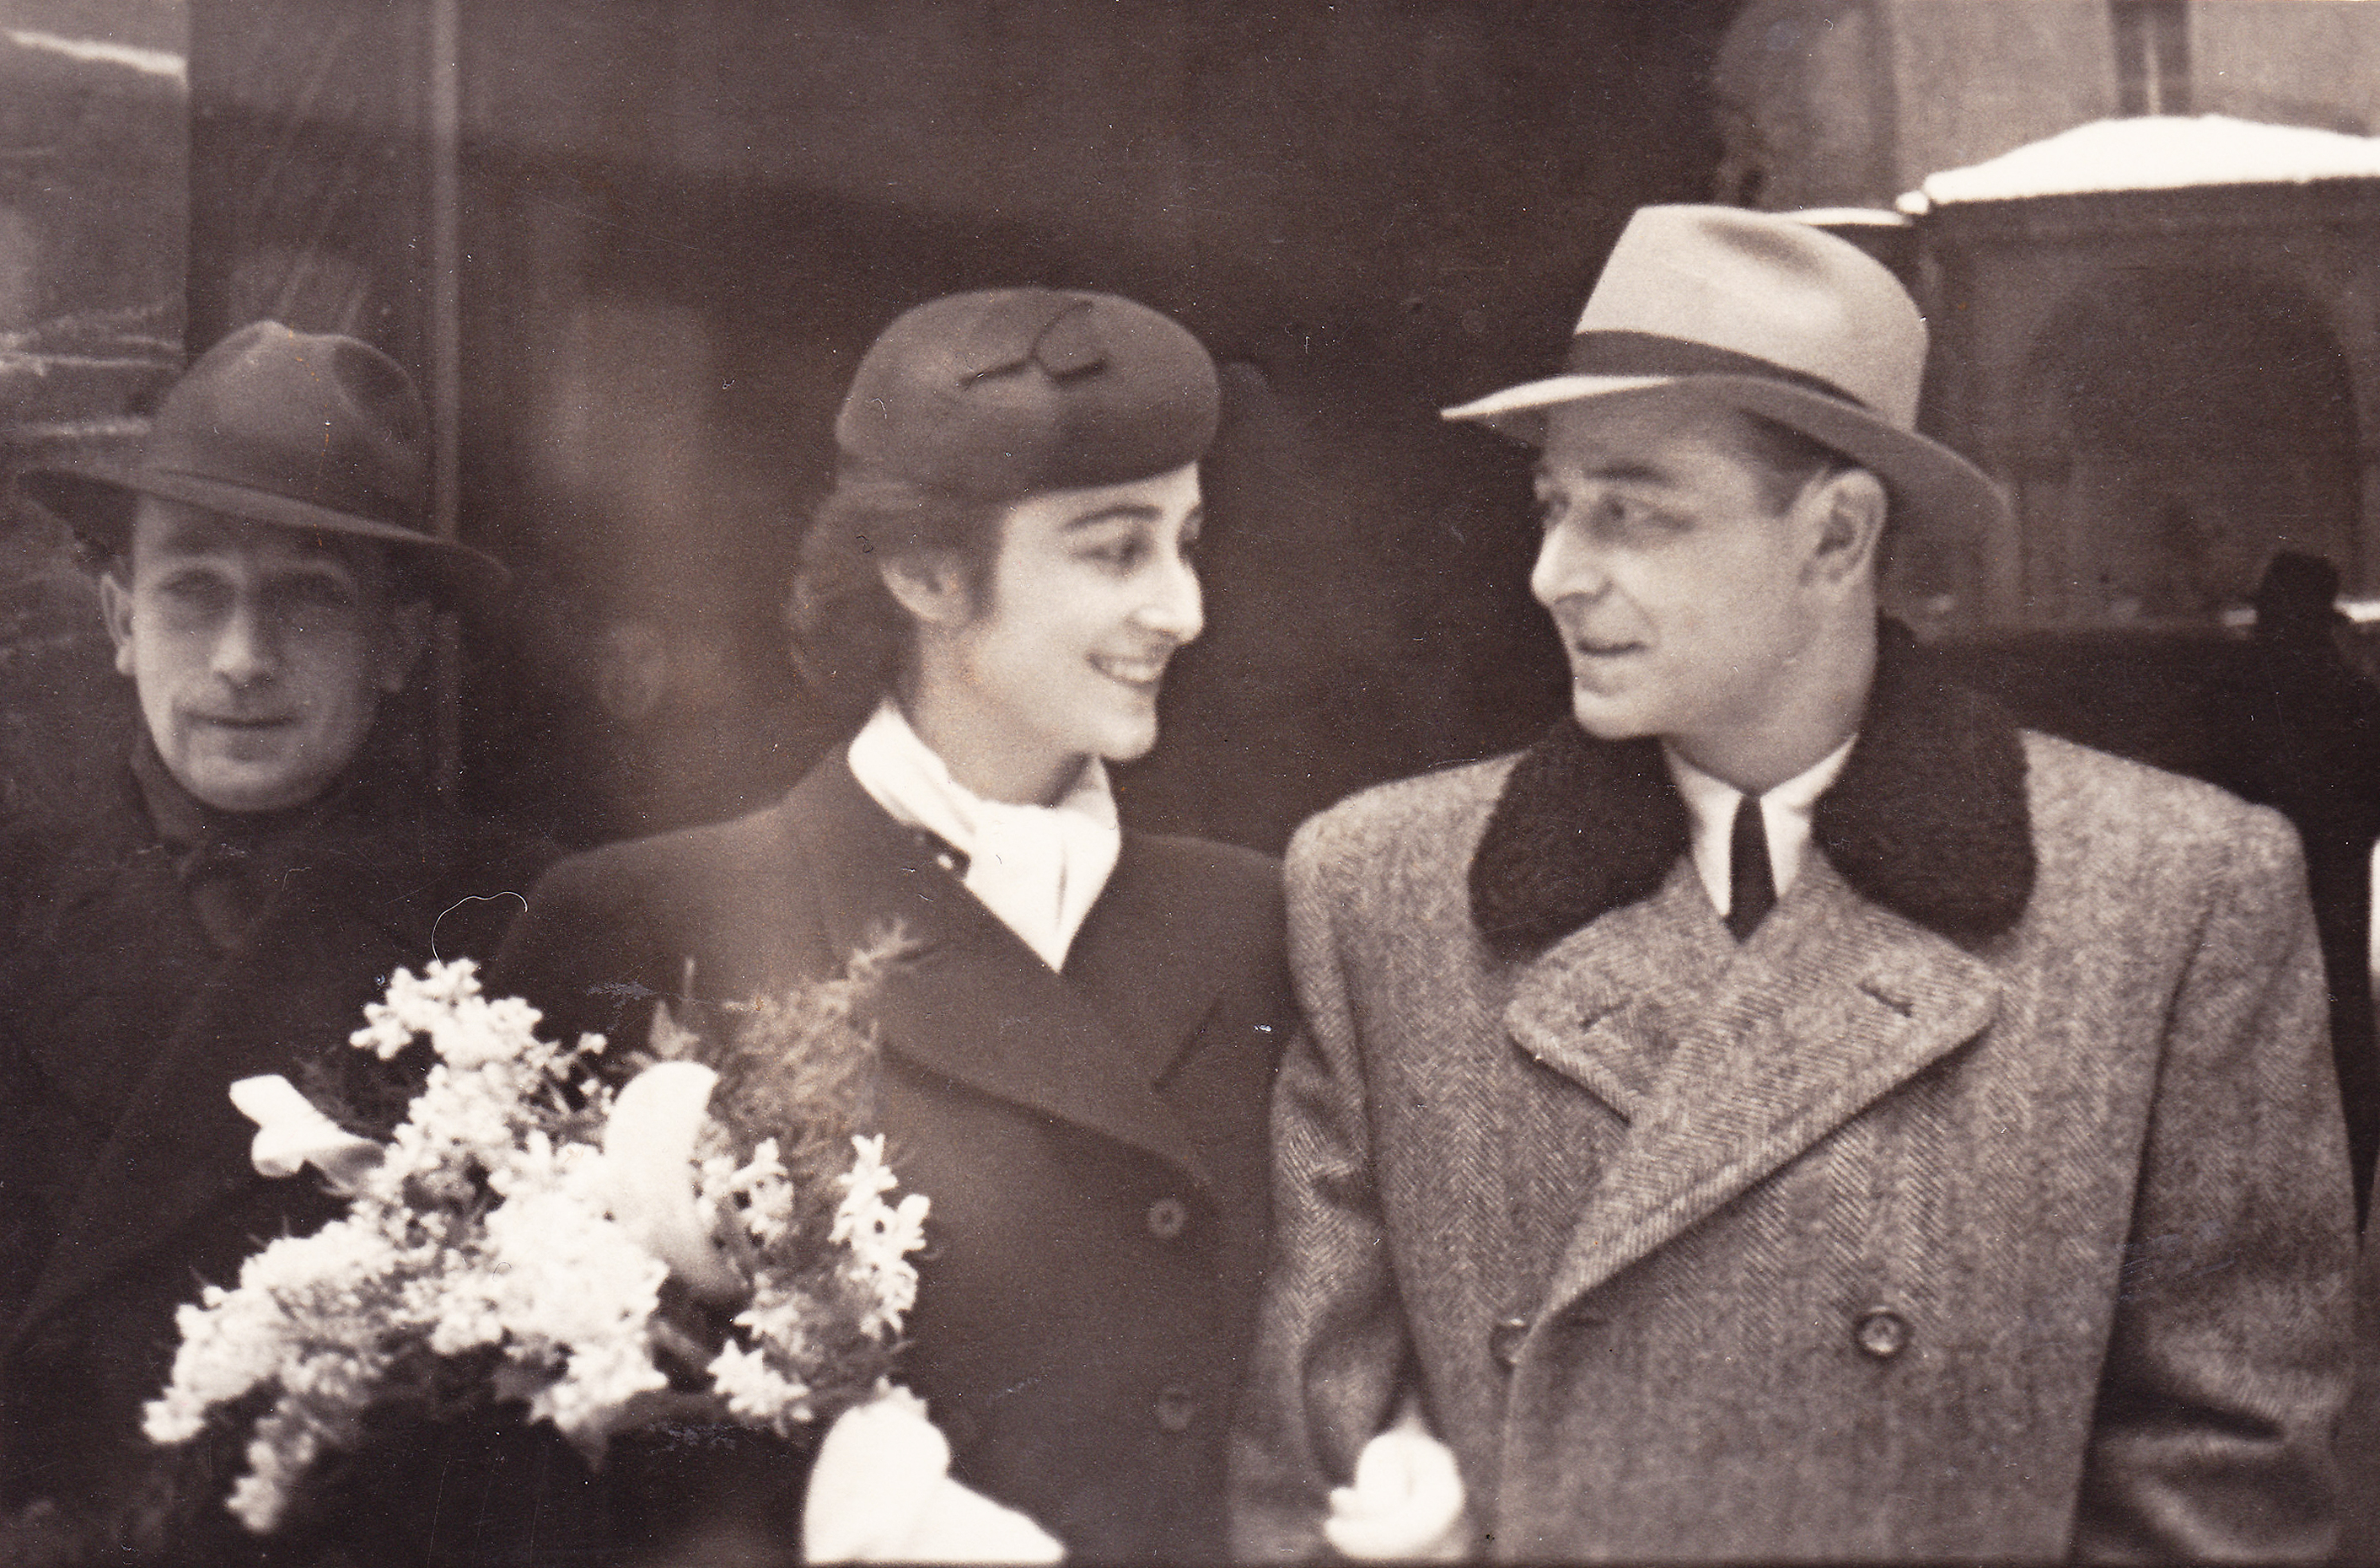 Hochzeit von Onkel Eugen Ketely, 1947.